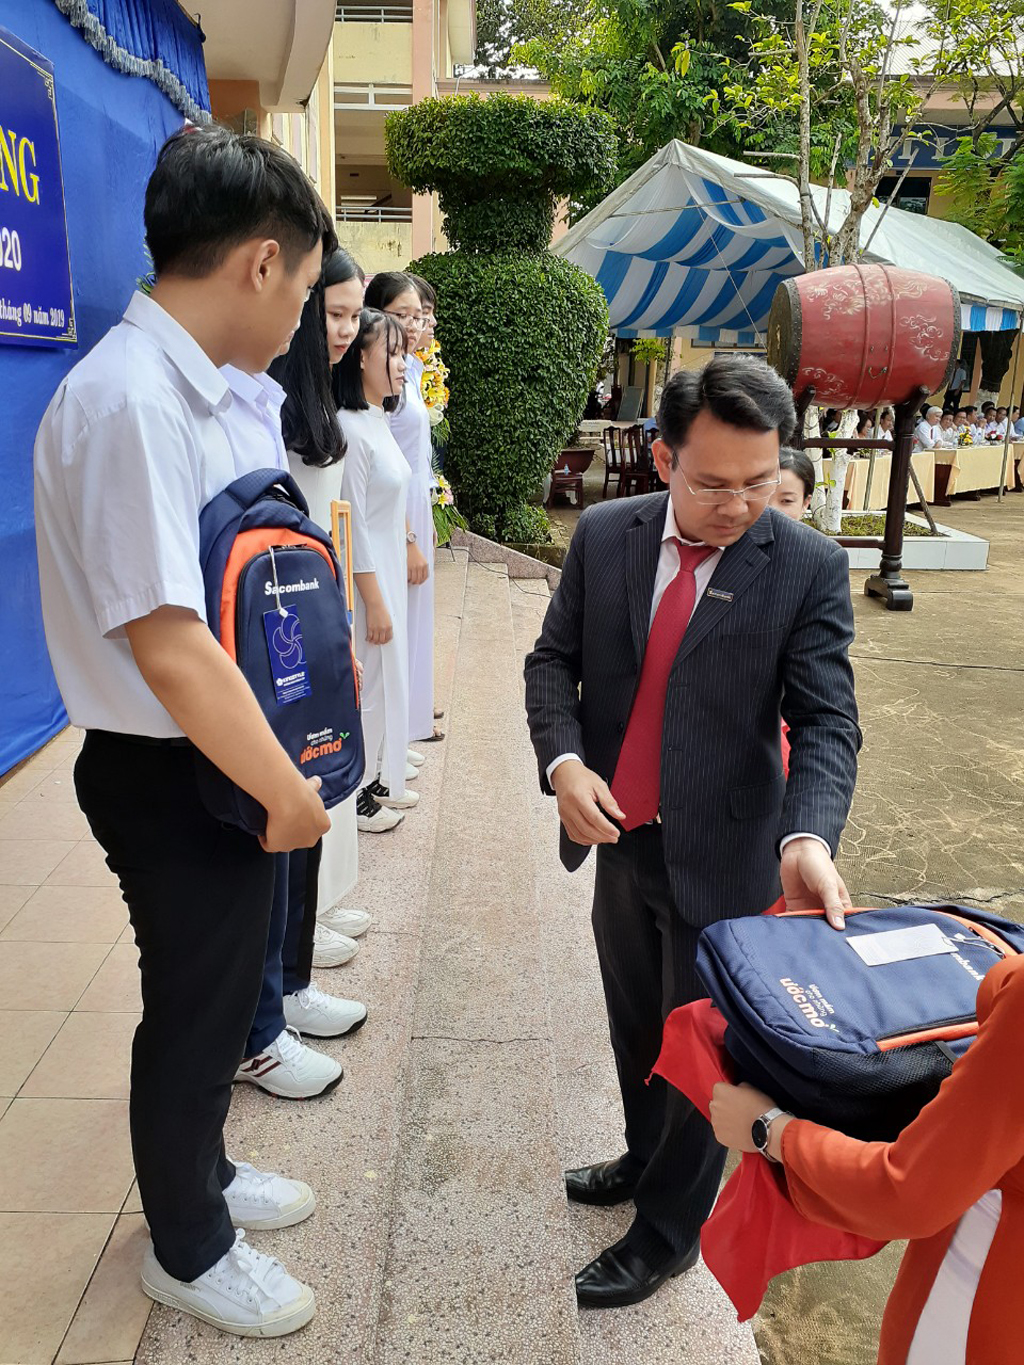 Ông Nguyễn Hoàng Anh Vũ - PGĐ Sacombank chi nhánh Bình Phước trao học bổng Sacombank - Ươm mầm cho những ước mơ 2019 cho các em tại Trường THPT Chuyên Quang Trung